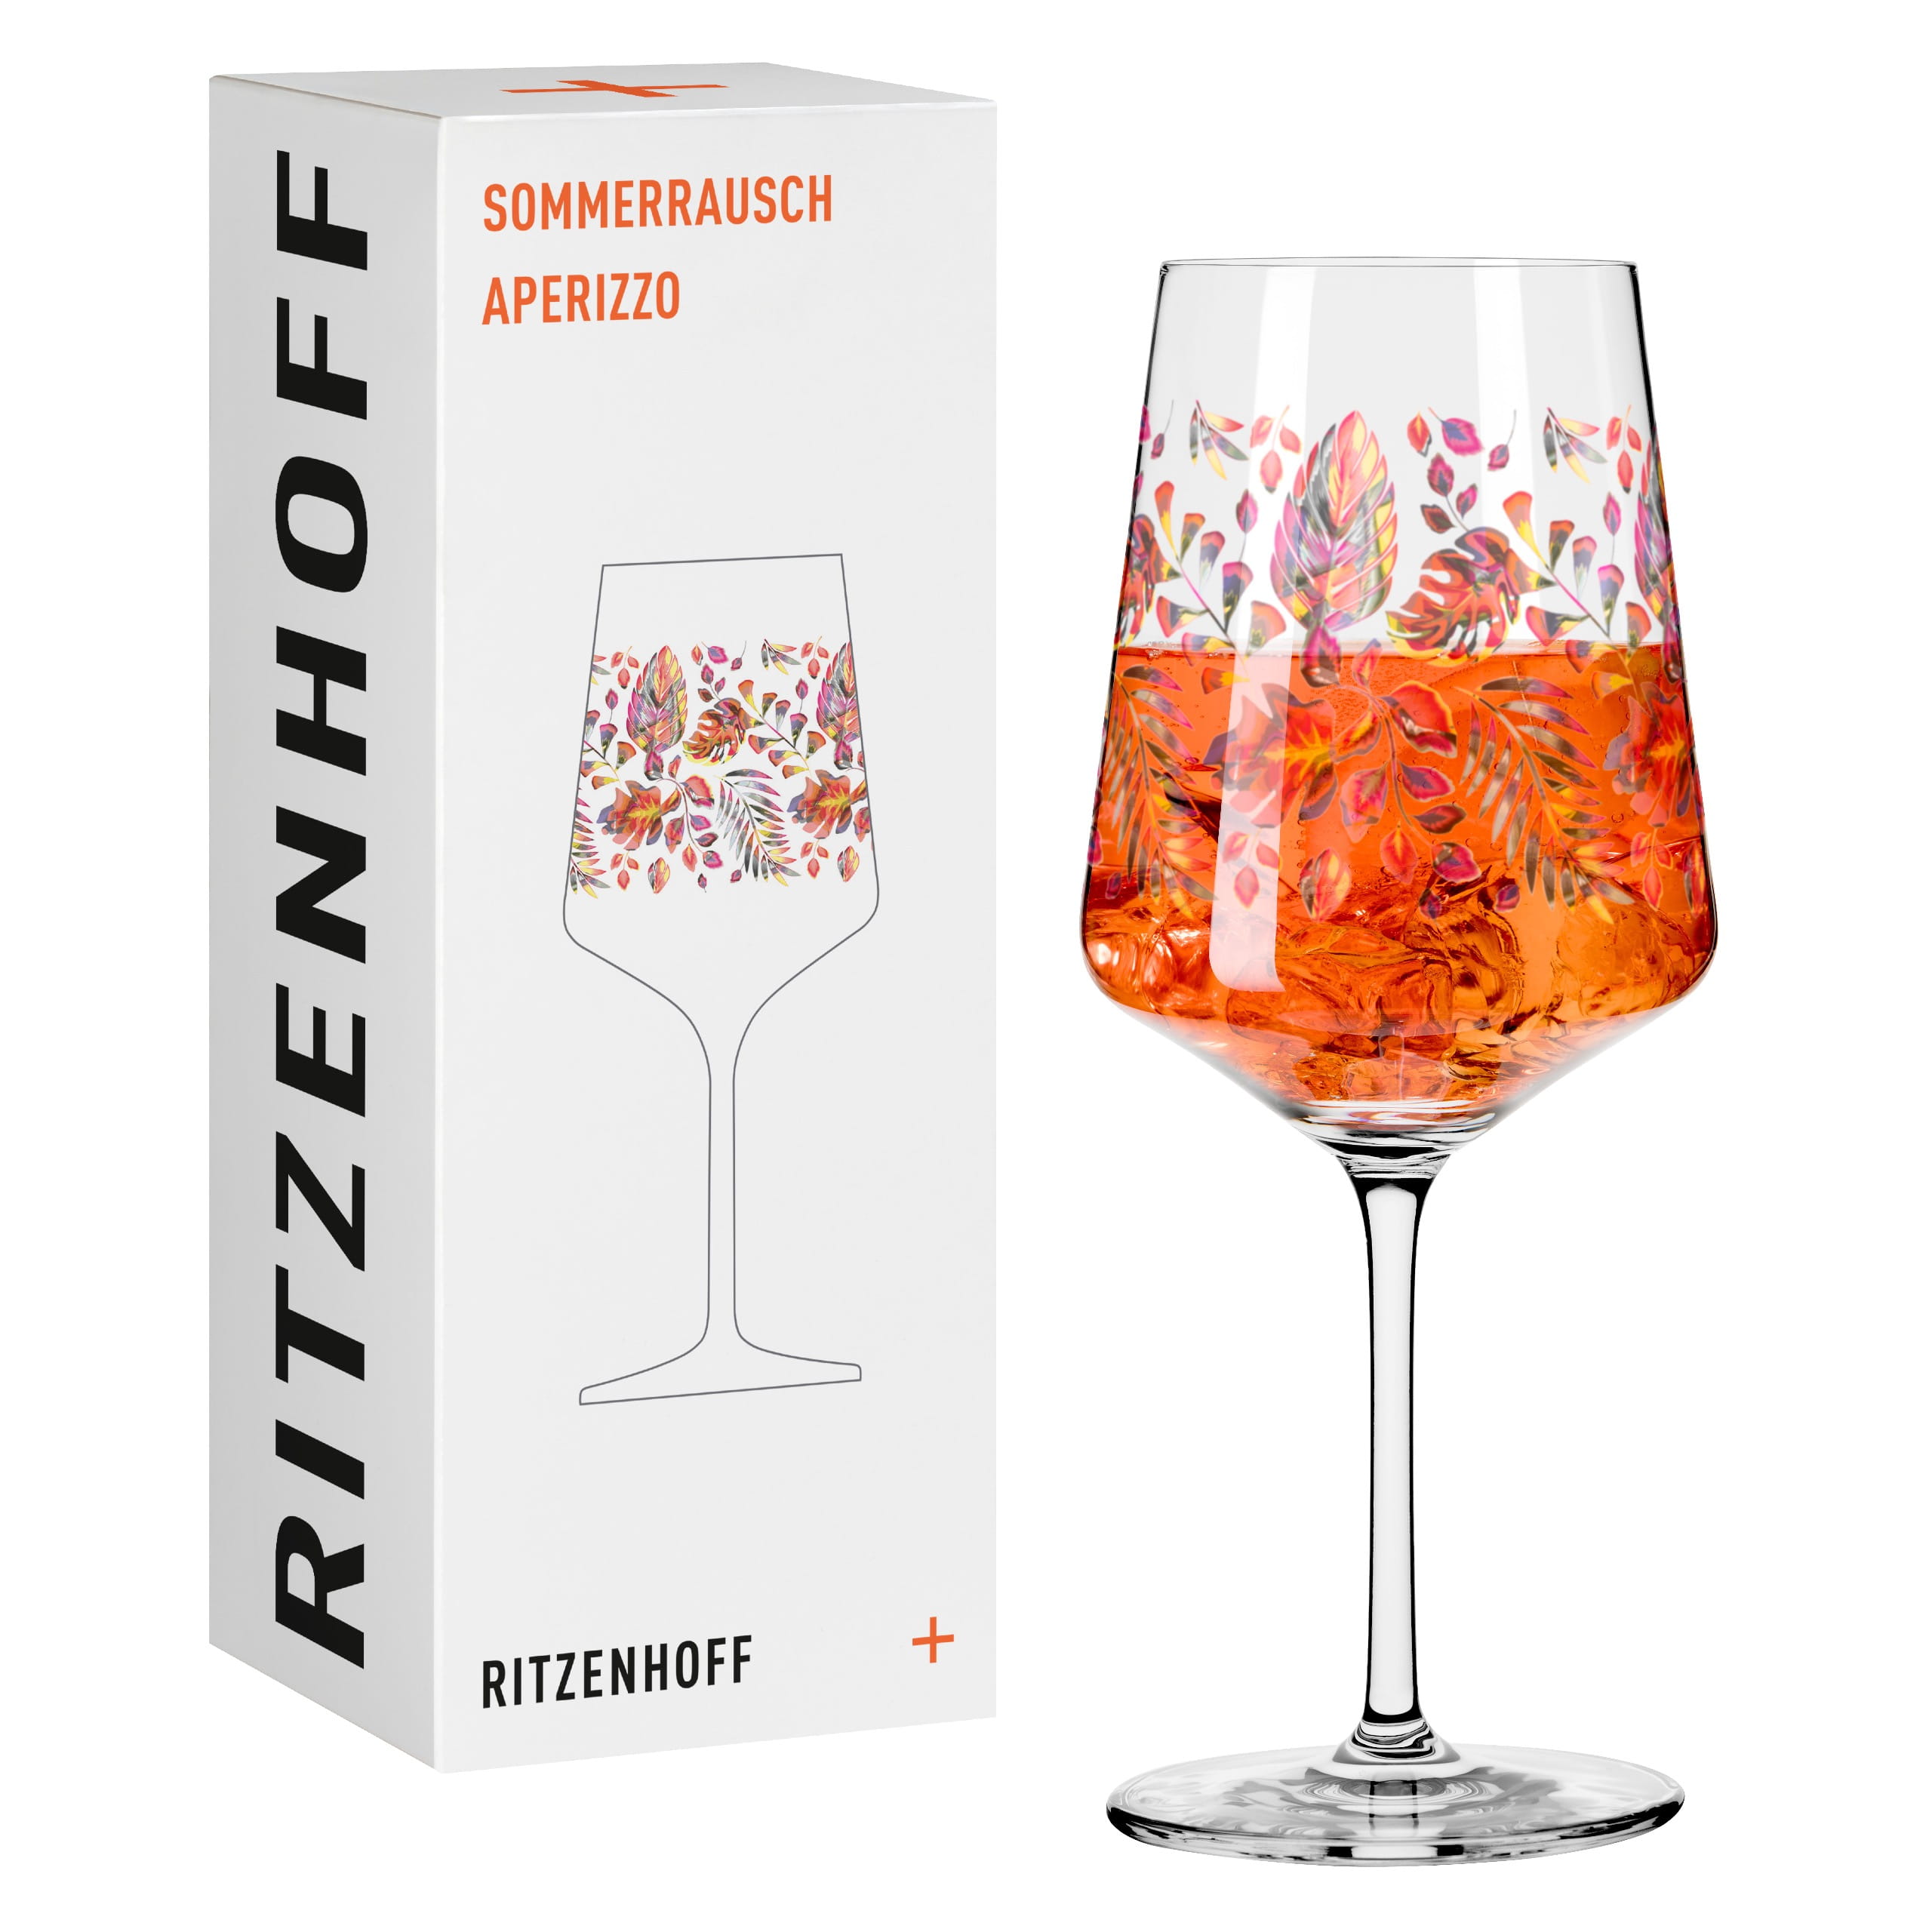 Aperitifglas von Offizieller Team Ritzenhoff kaufen #16 Sommerrausch Design Ritzenhoff | Shop online